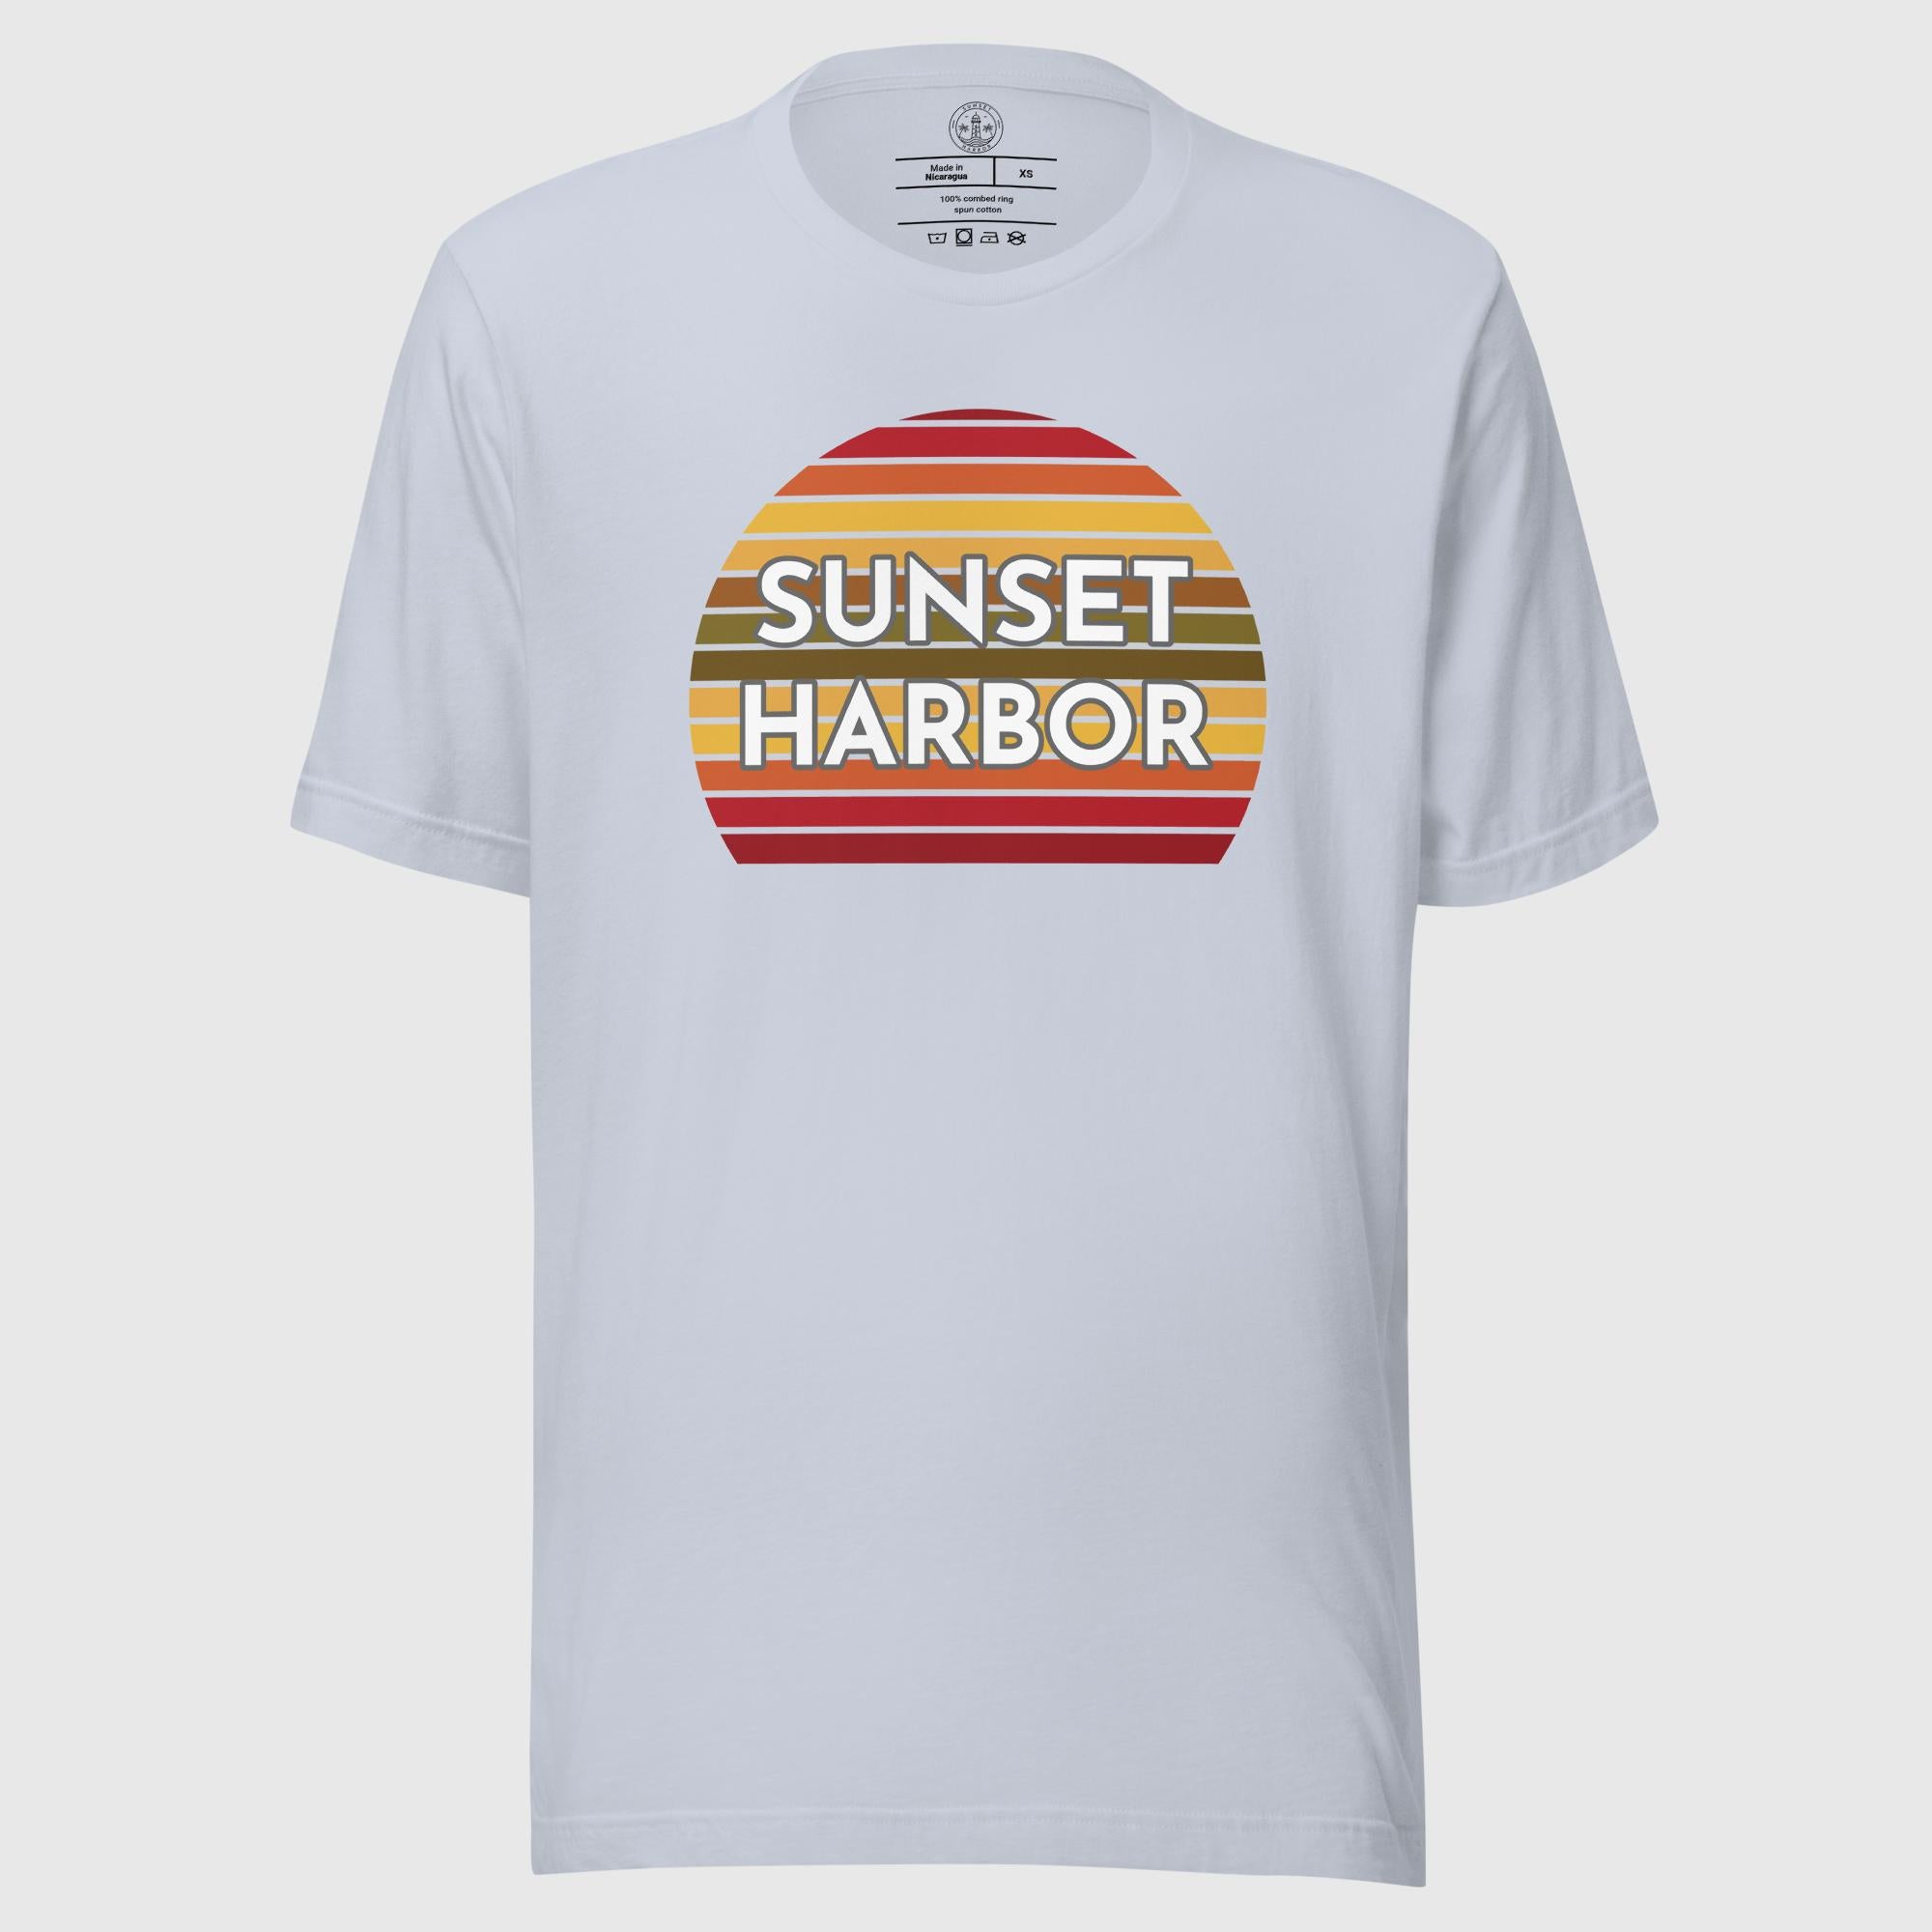 Unisex t-shirt - Sunset Harbor - Sunset Harbor Clothing